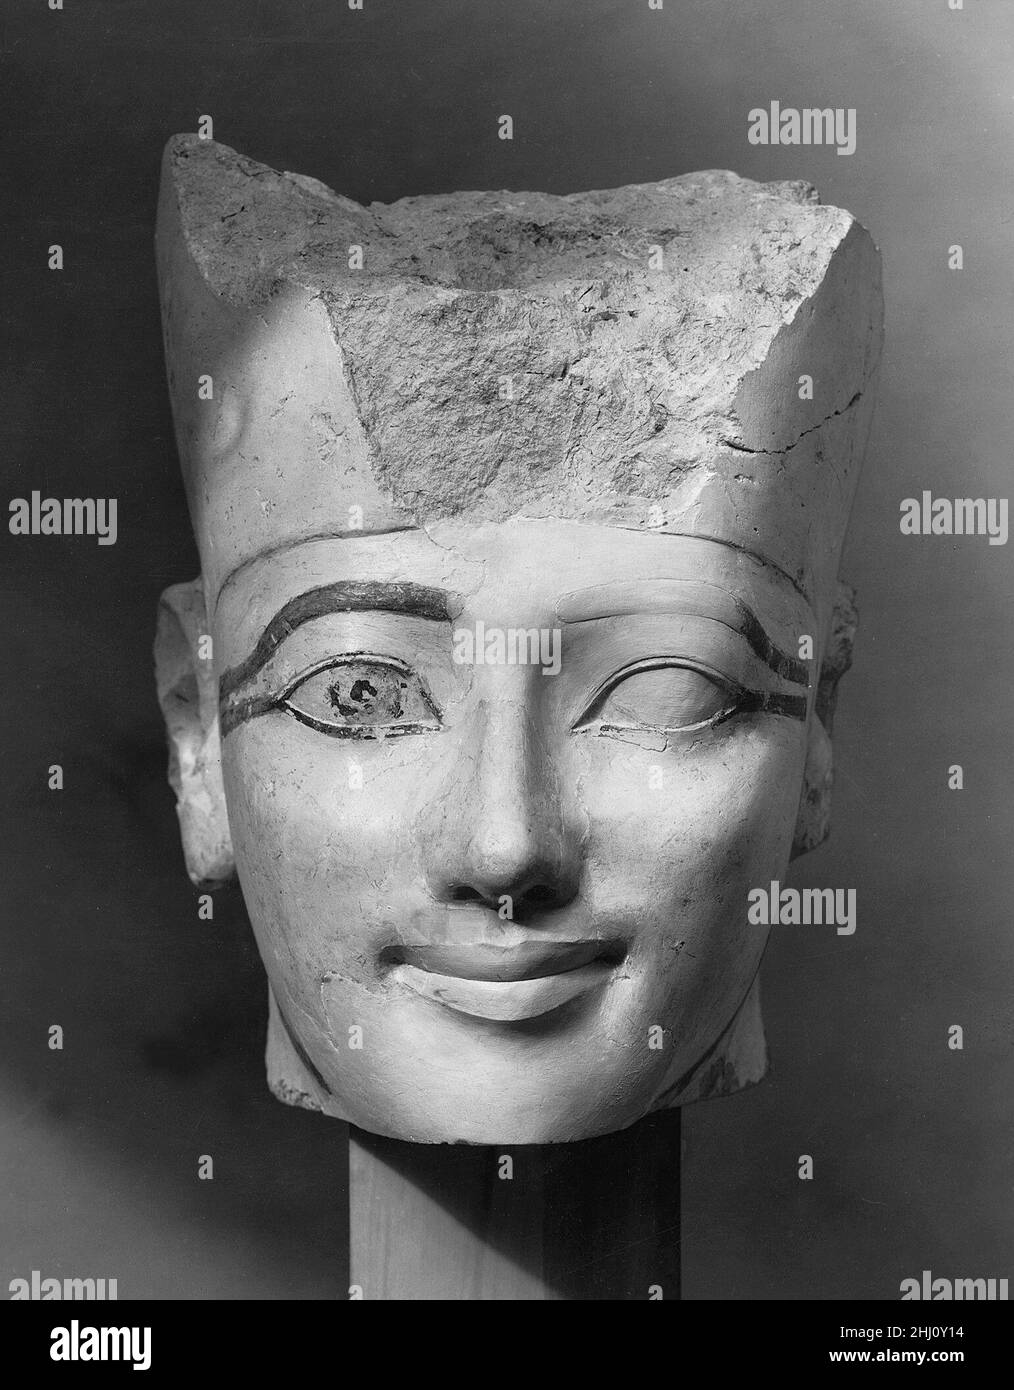 Testa di una statua di Osiride di Hatshepsut ca. 1479–1458 a.C. nuovo regno questo capo apparteneva ad una statua che rappresentava Hatshepsut come Osiride, dio degli umili. Fu una delle quattro figure di Osiride che decorarono il santuario di Amun nel suo tempio funerario a Deir el Bahri. Questa testa e un'altra nella collezione (31,3.154) indossano la Corona Bianca dell'Alto Egitto e erano originariamente all'estremità meridionale del santuario. Un'altra testa della collezione (31,3.153) indossa la Doppia Corona e proveniva dall'estremità settentrionale. Le statue di Osiride che decoravano il tempio di Hatshepsut erano statue 'fidanzate' - i Foto Stock